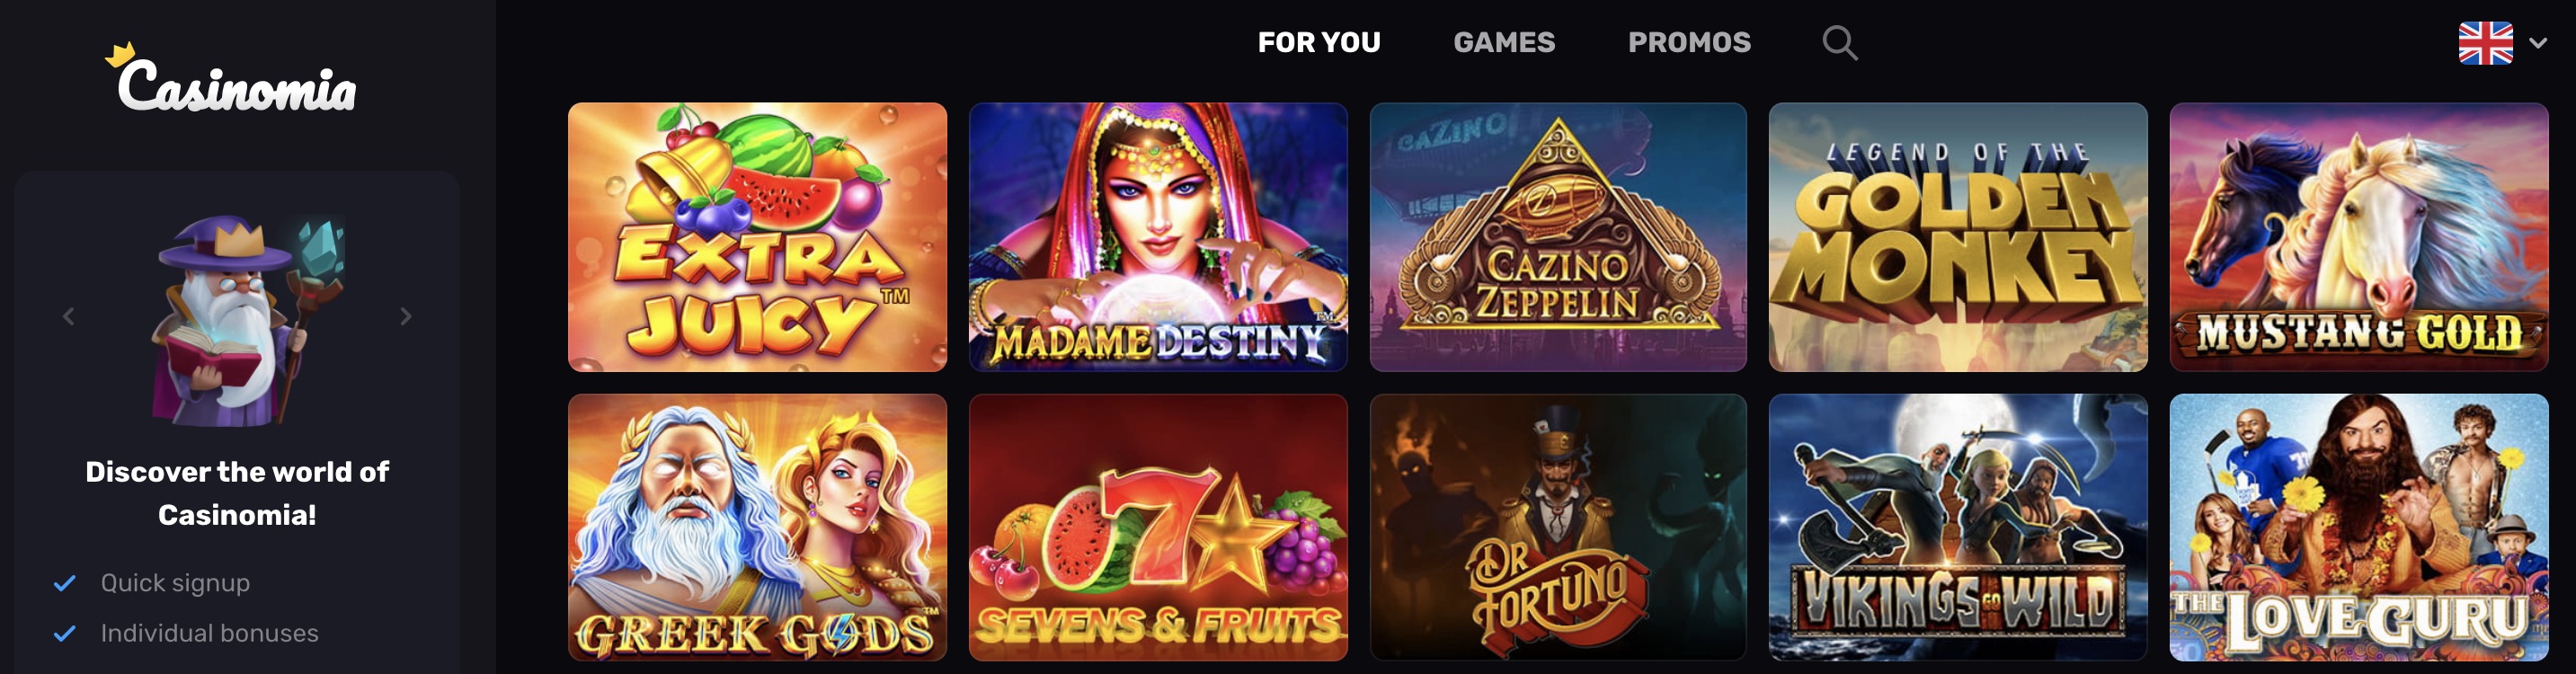 CasinomiaGames